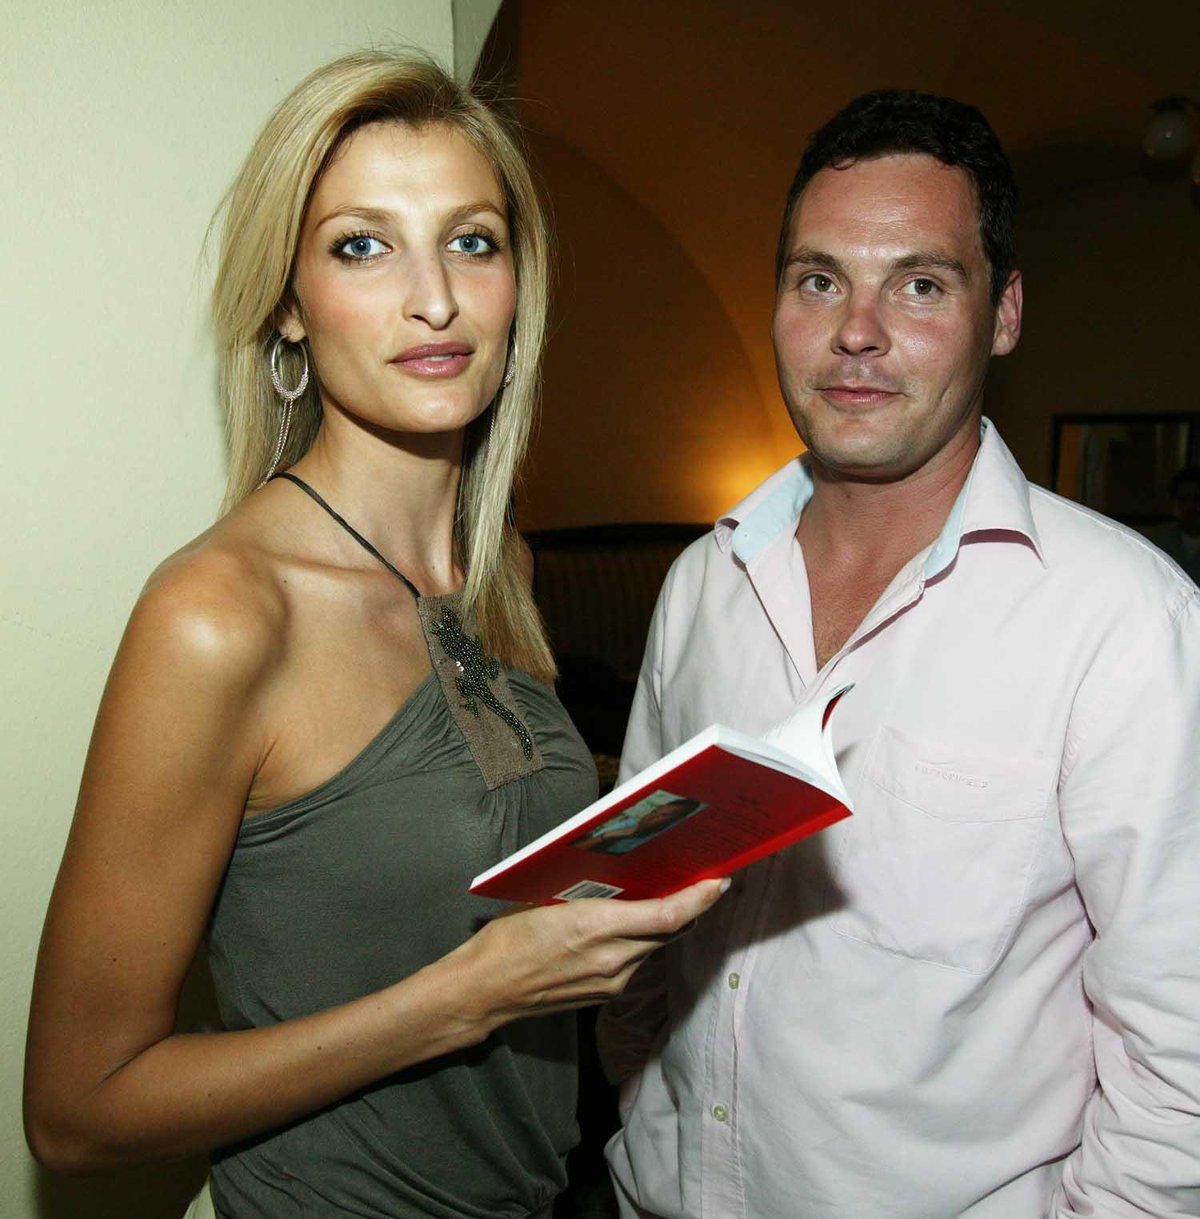 2005: Šuškalo se, že Filip si je blízký s modelkou Terezou Maxovou